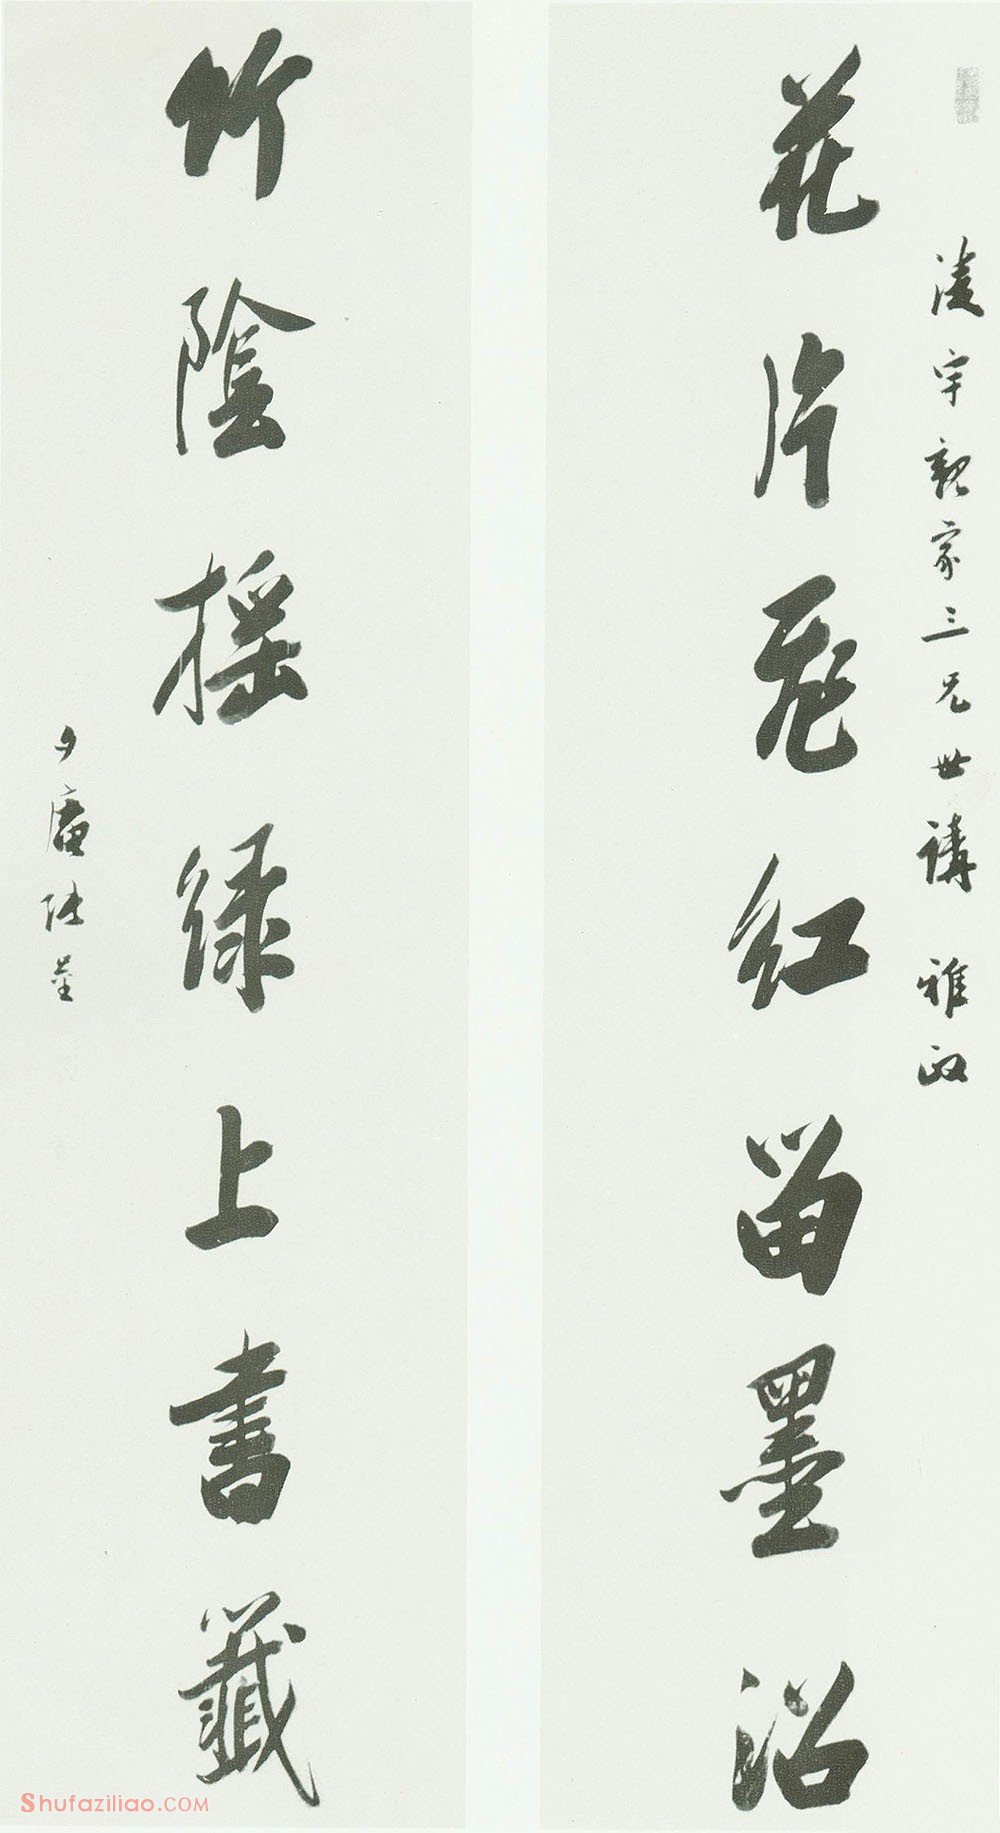 张崟《七言联》可嘉扫描于《中国美术全集》